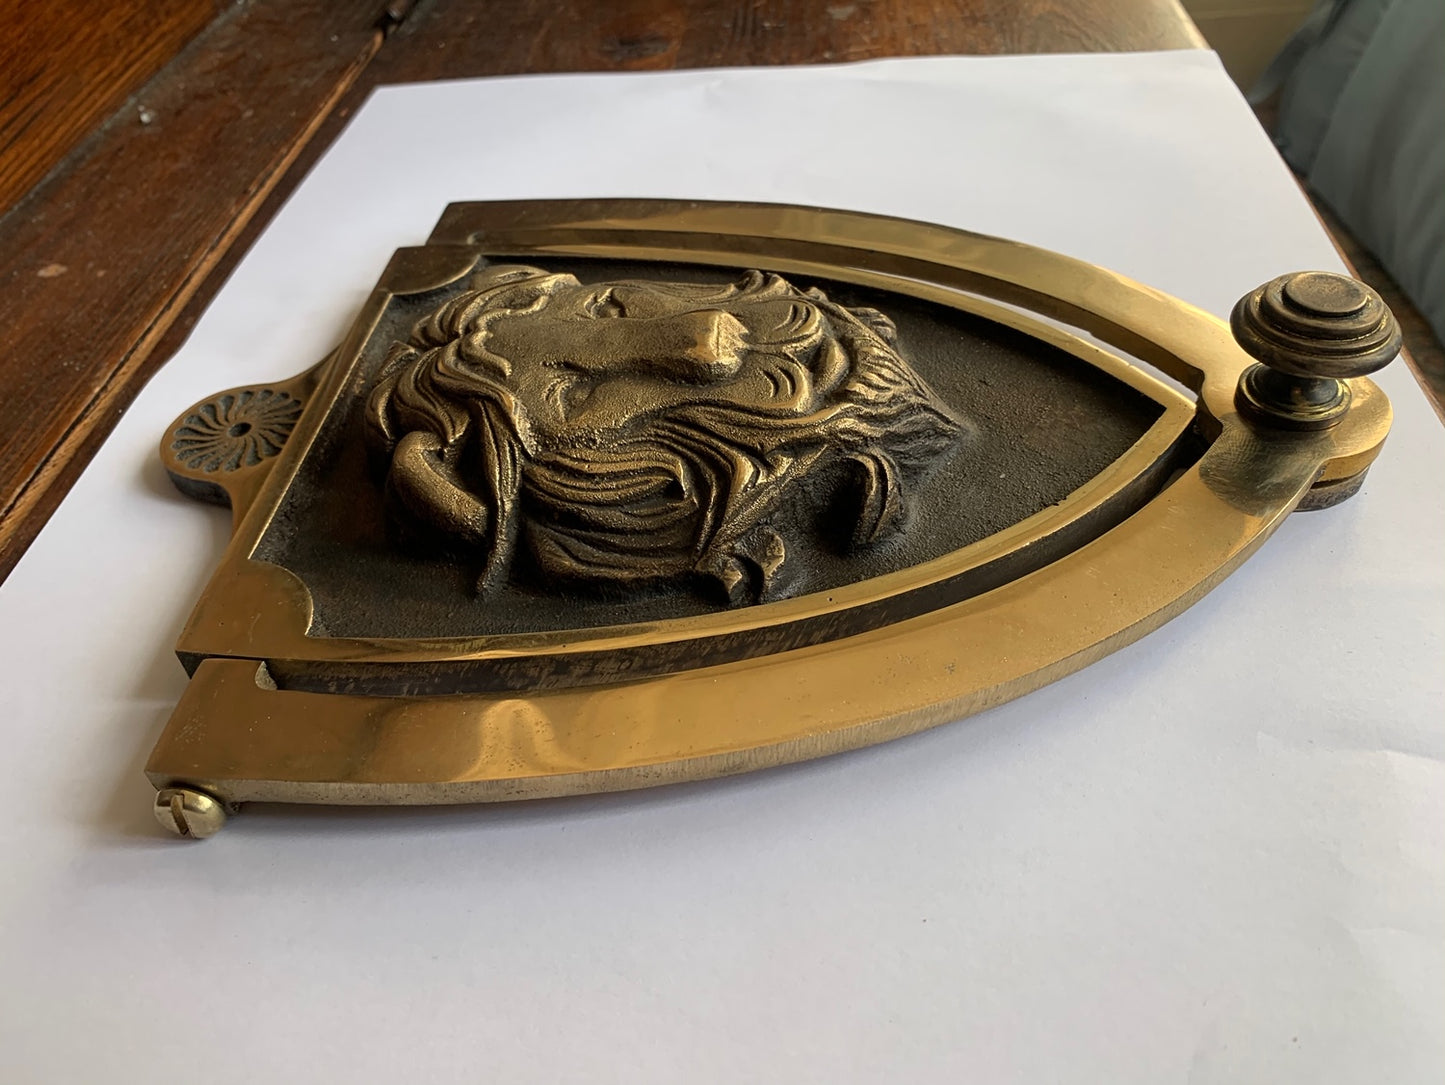 Decorative Shields with knocker